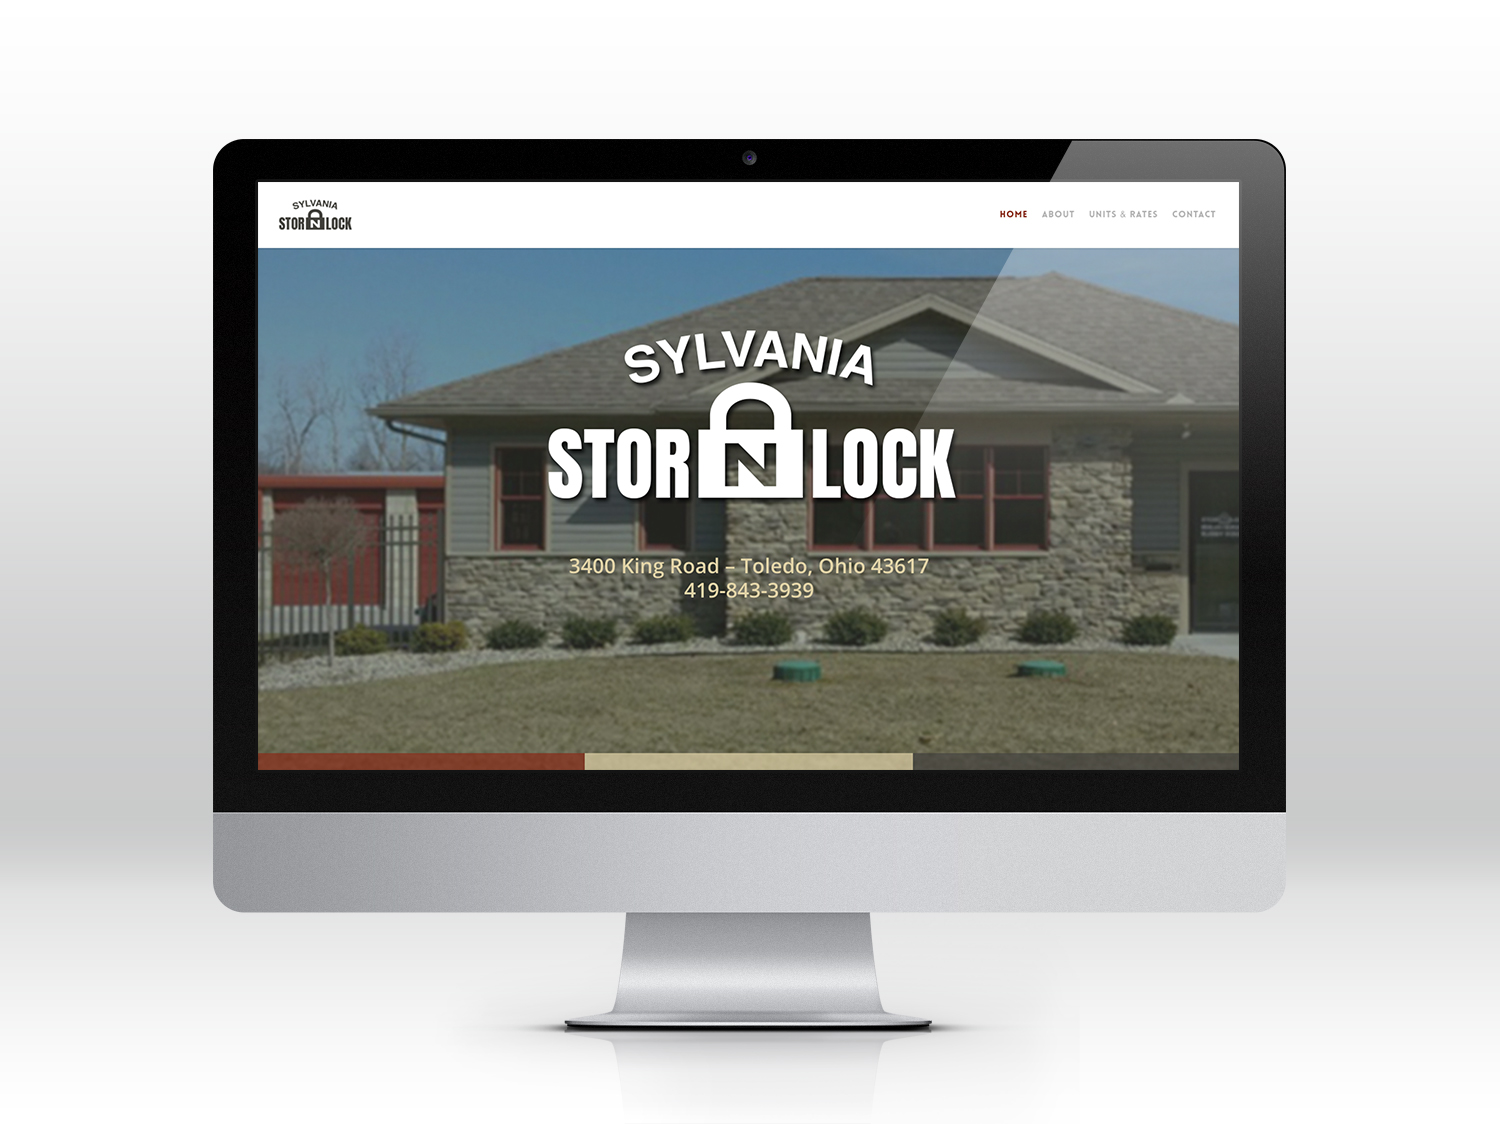 Sylvania Stor N Lock - Website